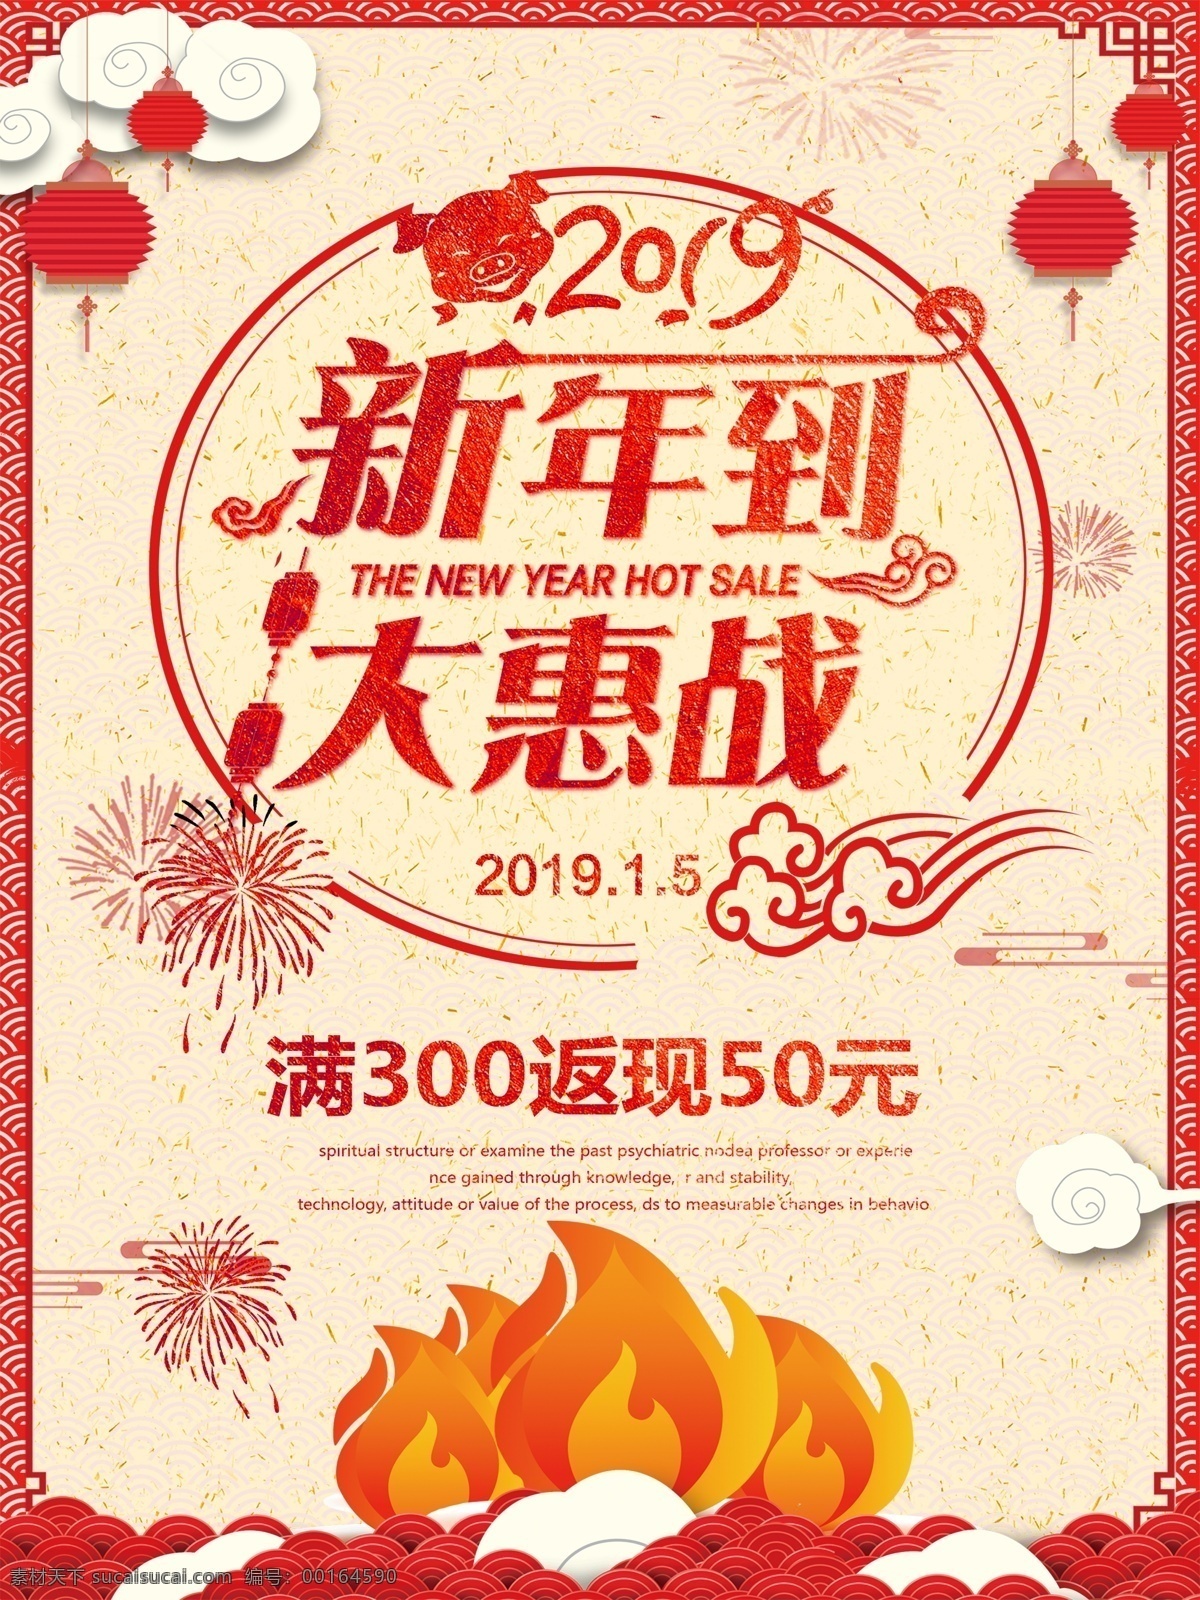 新年 大 惠 战 促销 海报 红金 新春 春节 2019 新年快乐 节日 祝福 节日宣传海报 海报模板